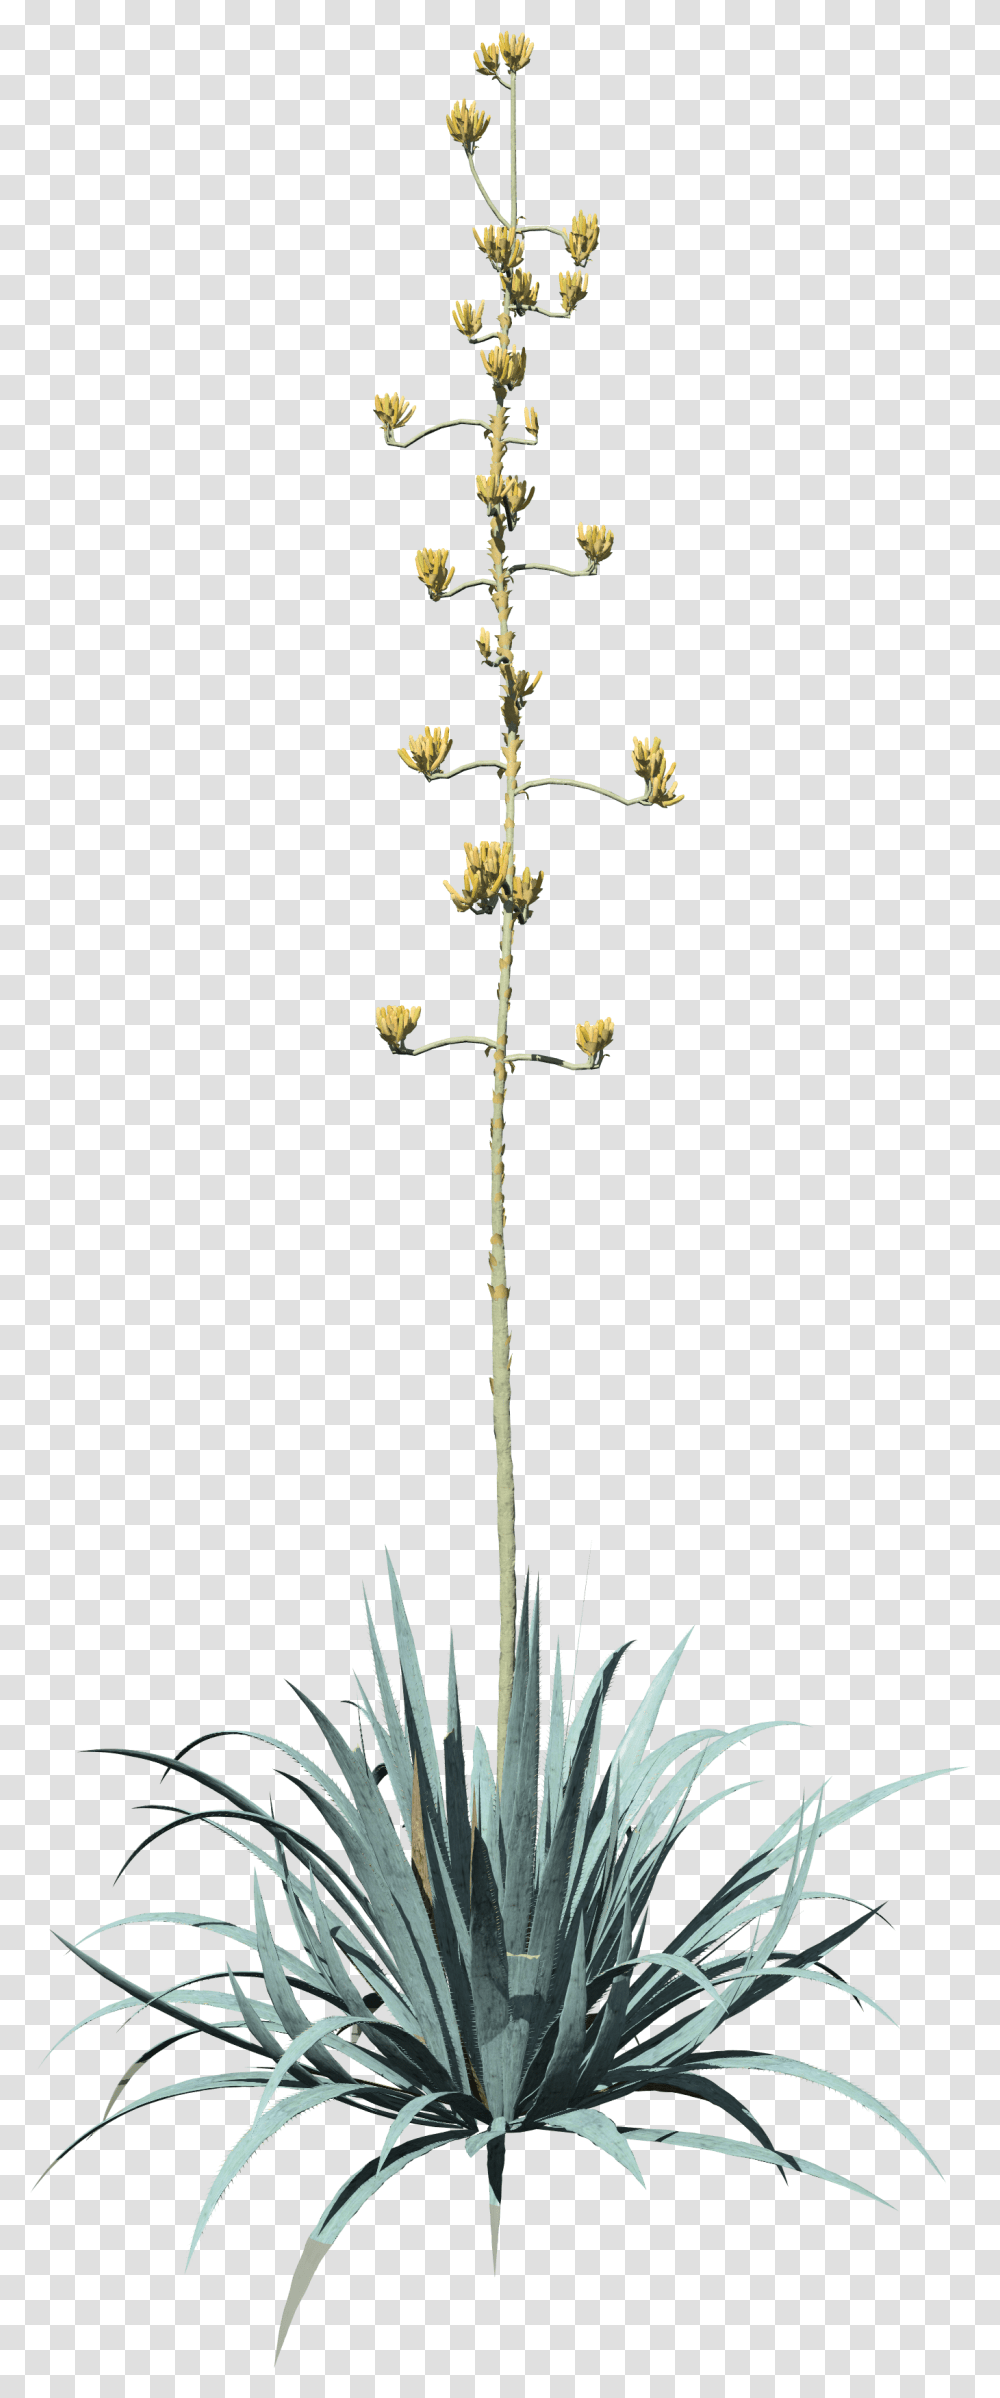 Top 5 Artist Spotlights July 2020 - Speedtree Vertical, Plant, Flower, Blossom, Floral Design Transparent Png